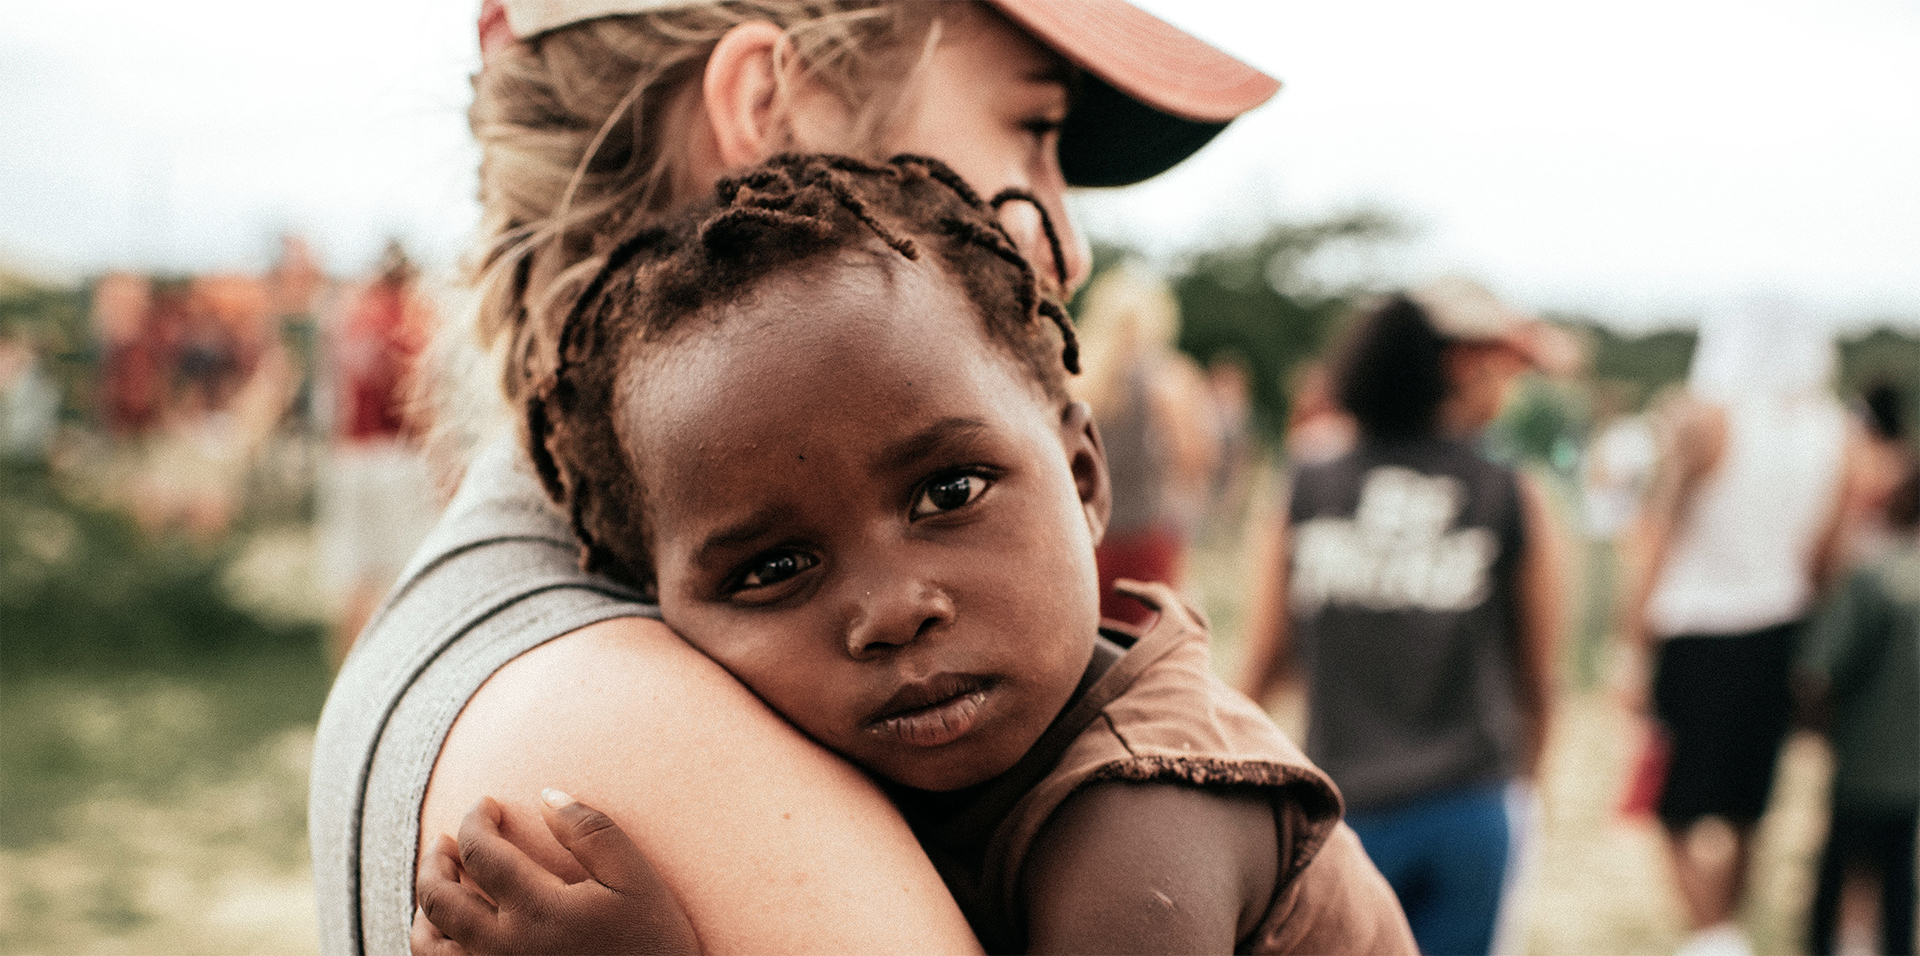 No continente africano — segundo dados da FAO de 2019 — um em cada cinco habitantes passa fome (aproximadamente 250 milhões de pessoas, isto é, 19,1% do total, mais do que o dobro da média global). Caridade ou campanhas midiáticas não resolverão o problema. Imagem: Webnode.